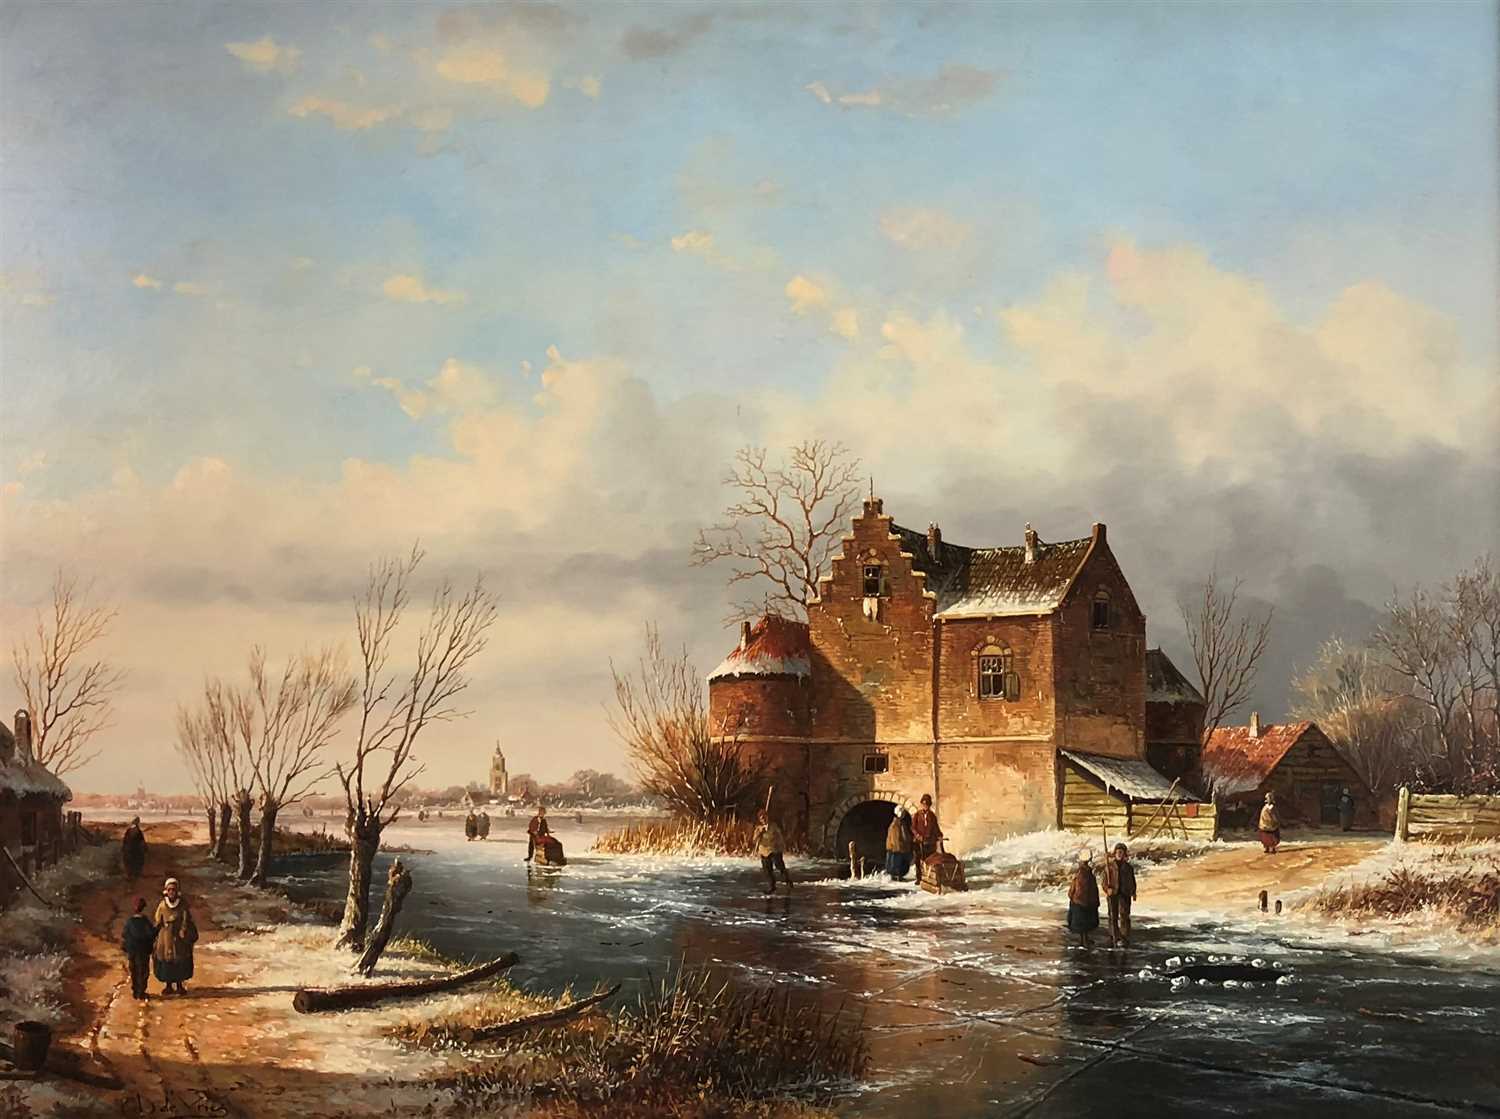 Lot 104 - De Vries, winter scene